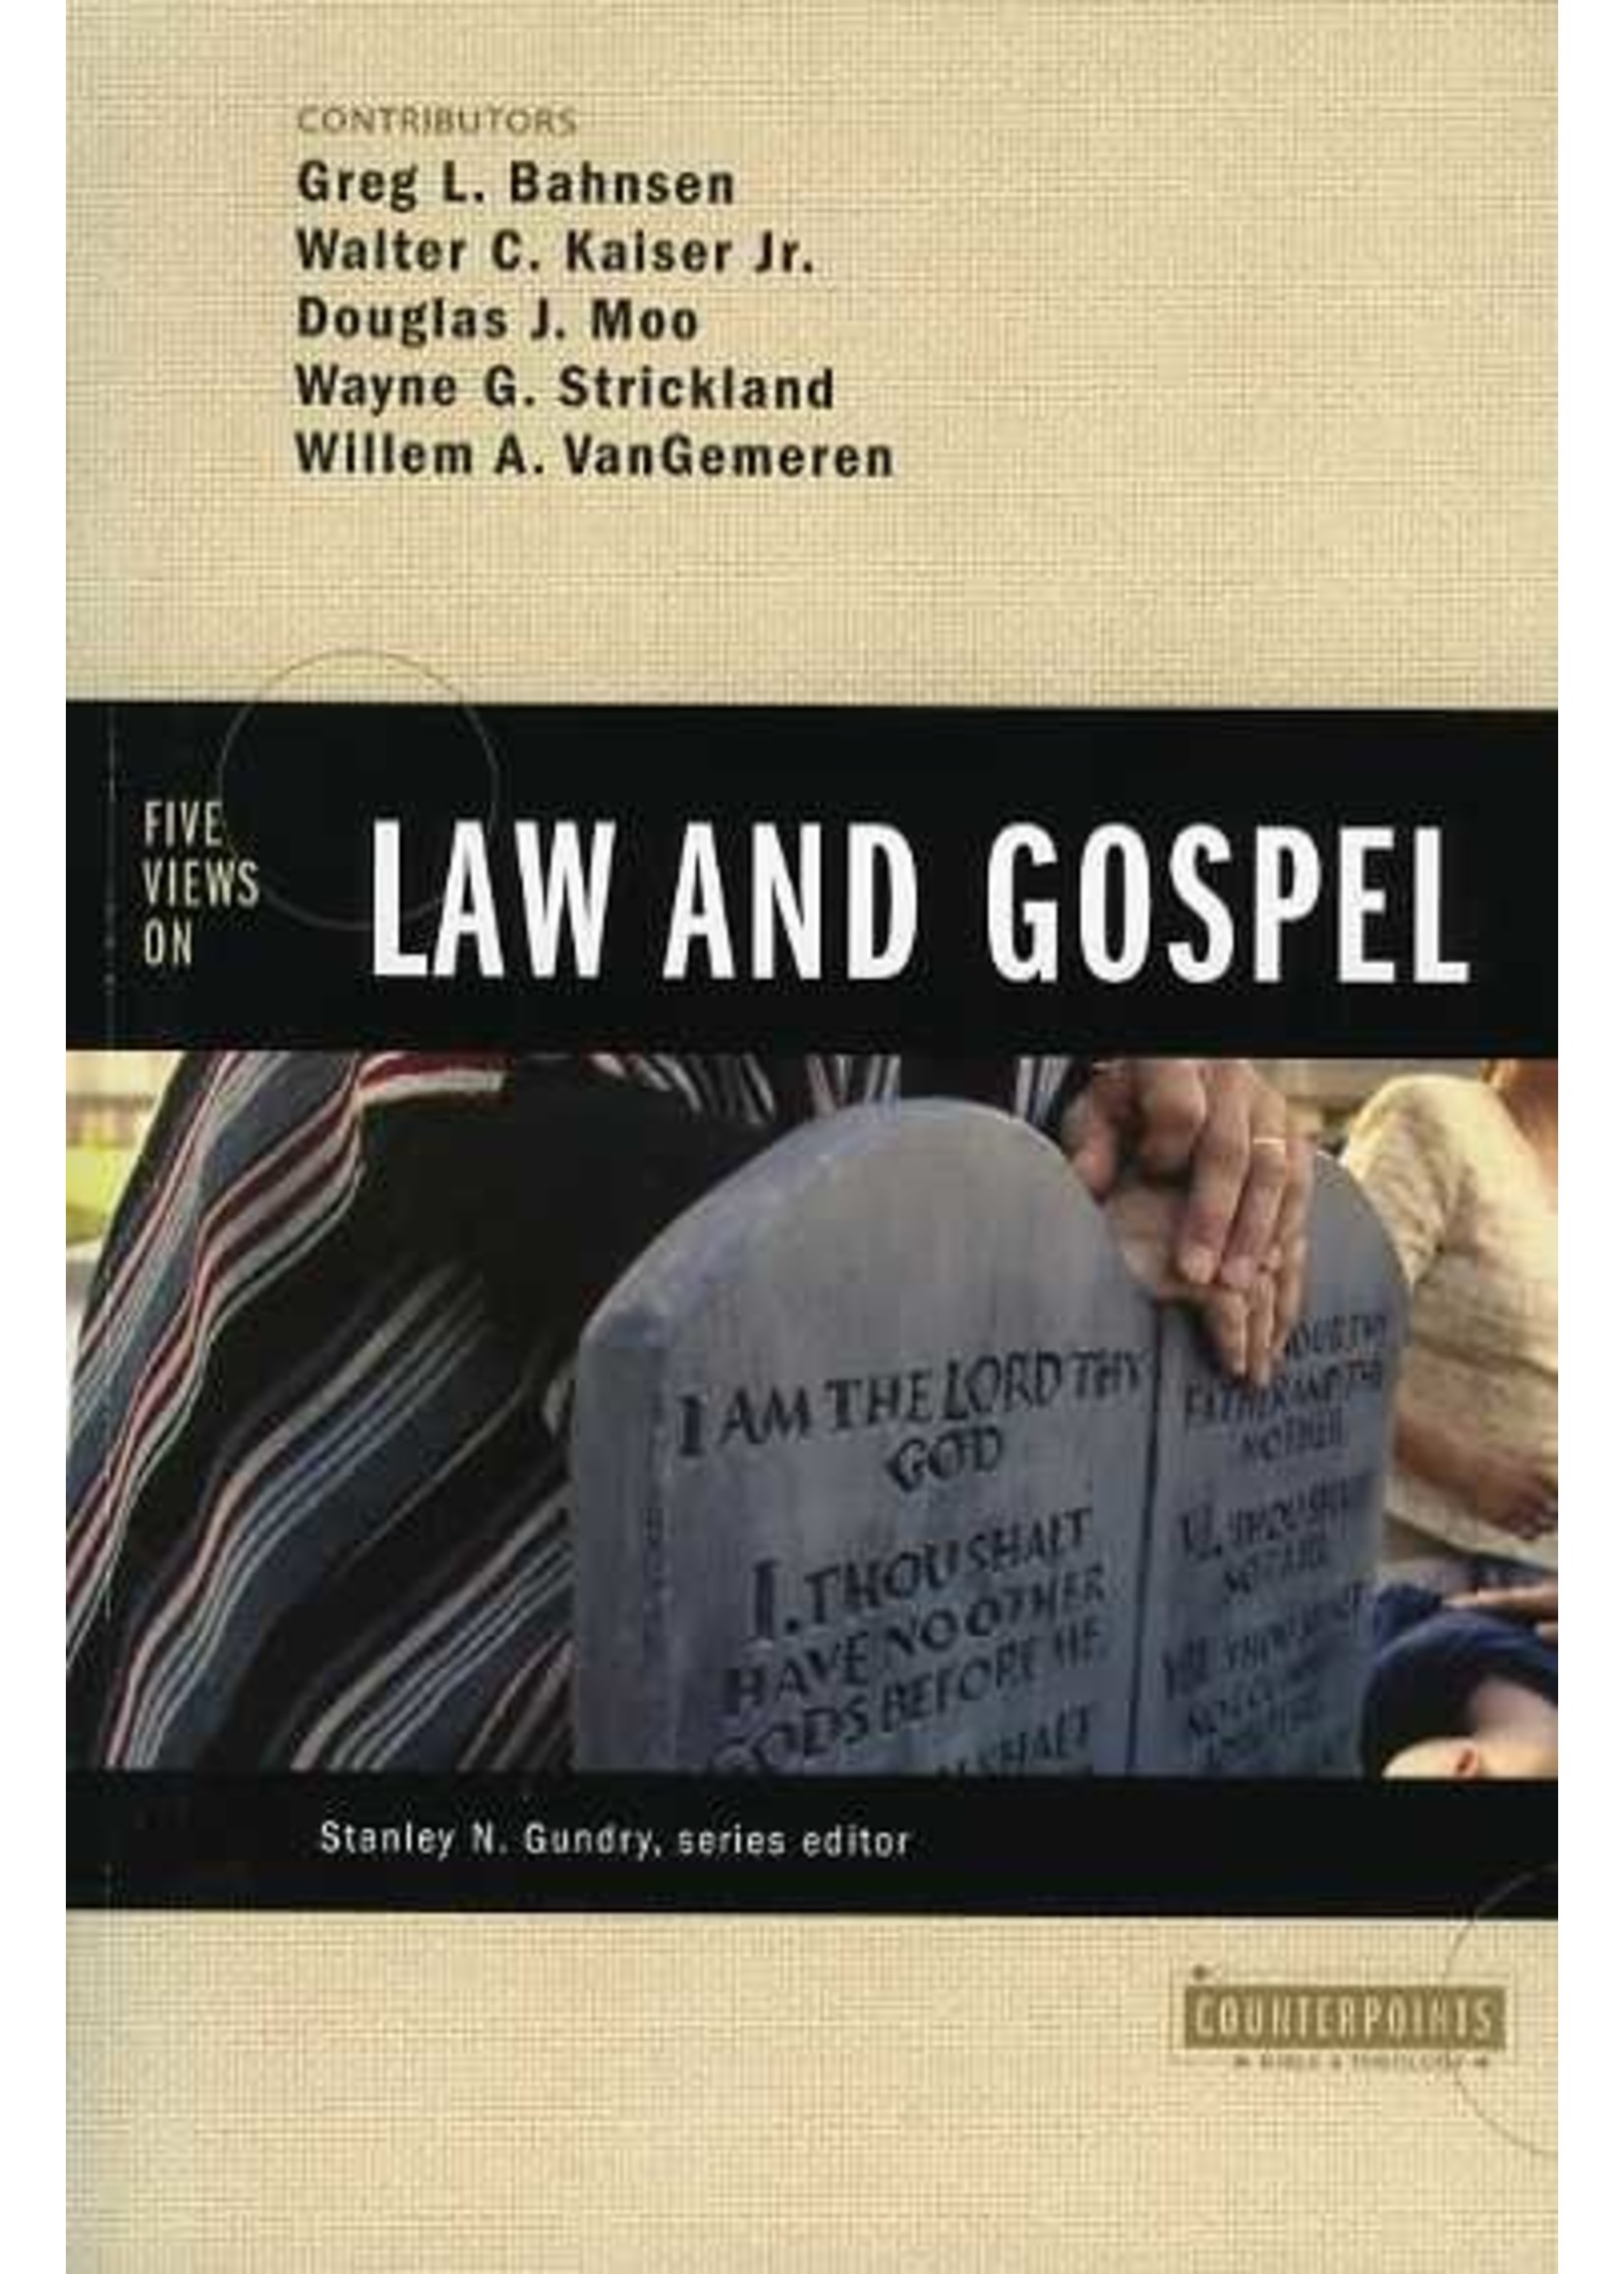 Zondervan Five Views on Law and Gospel - Greg Bahnsen